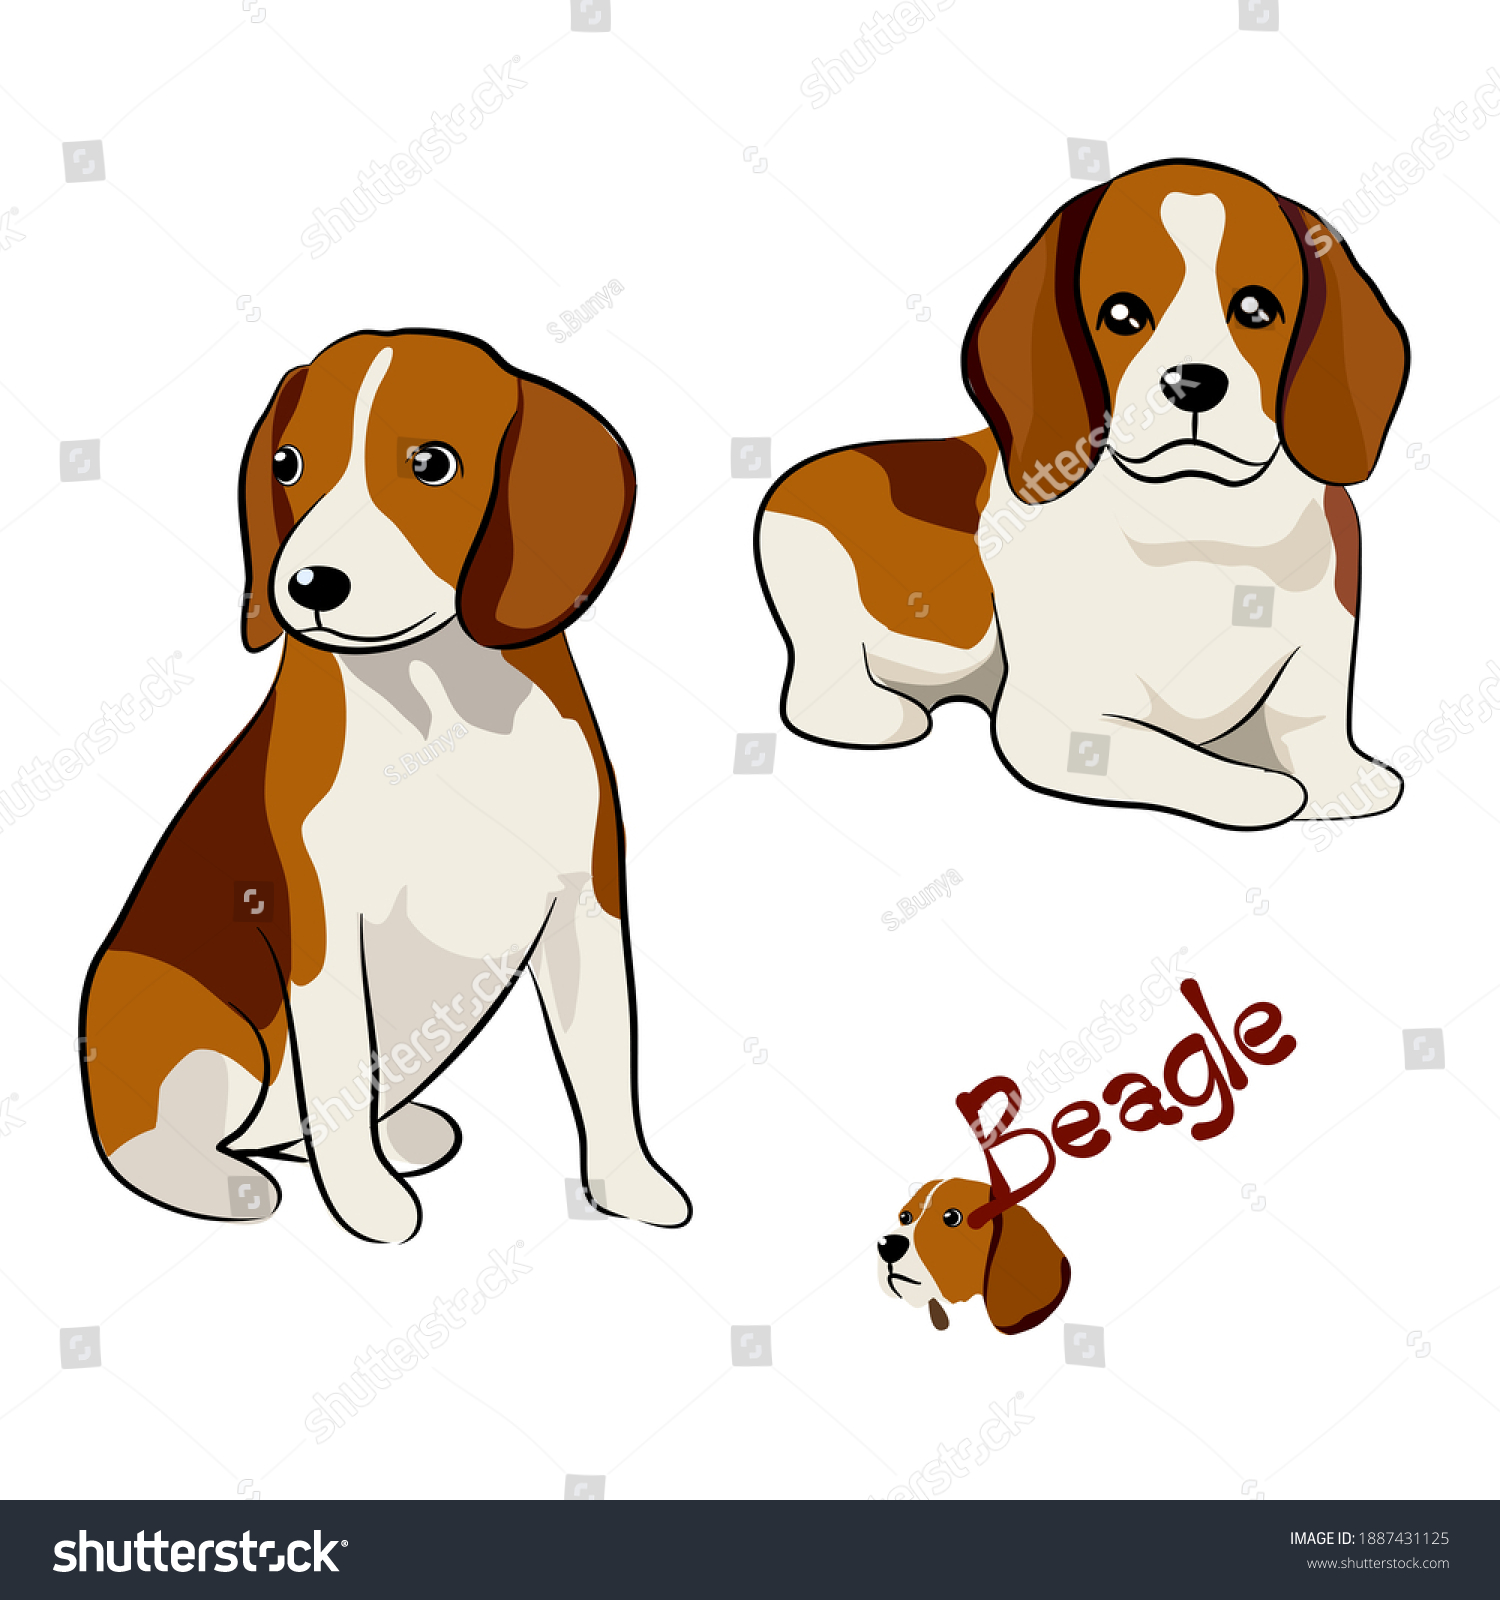 異なるポーズのビーグル犬のベクターイラストセット 白い背景に手描きの画像 のベクター画像素材 ロイヤリティフリー